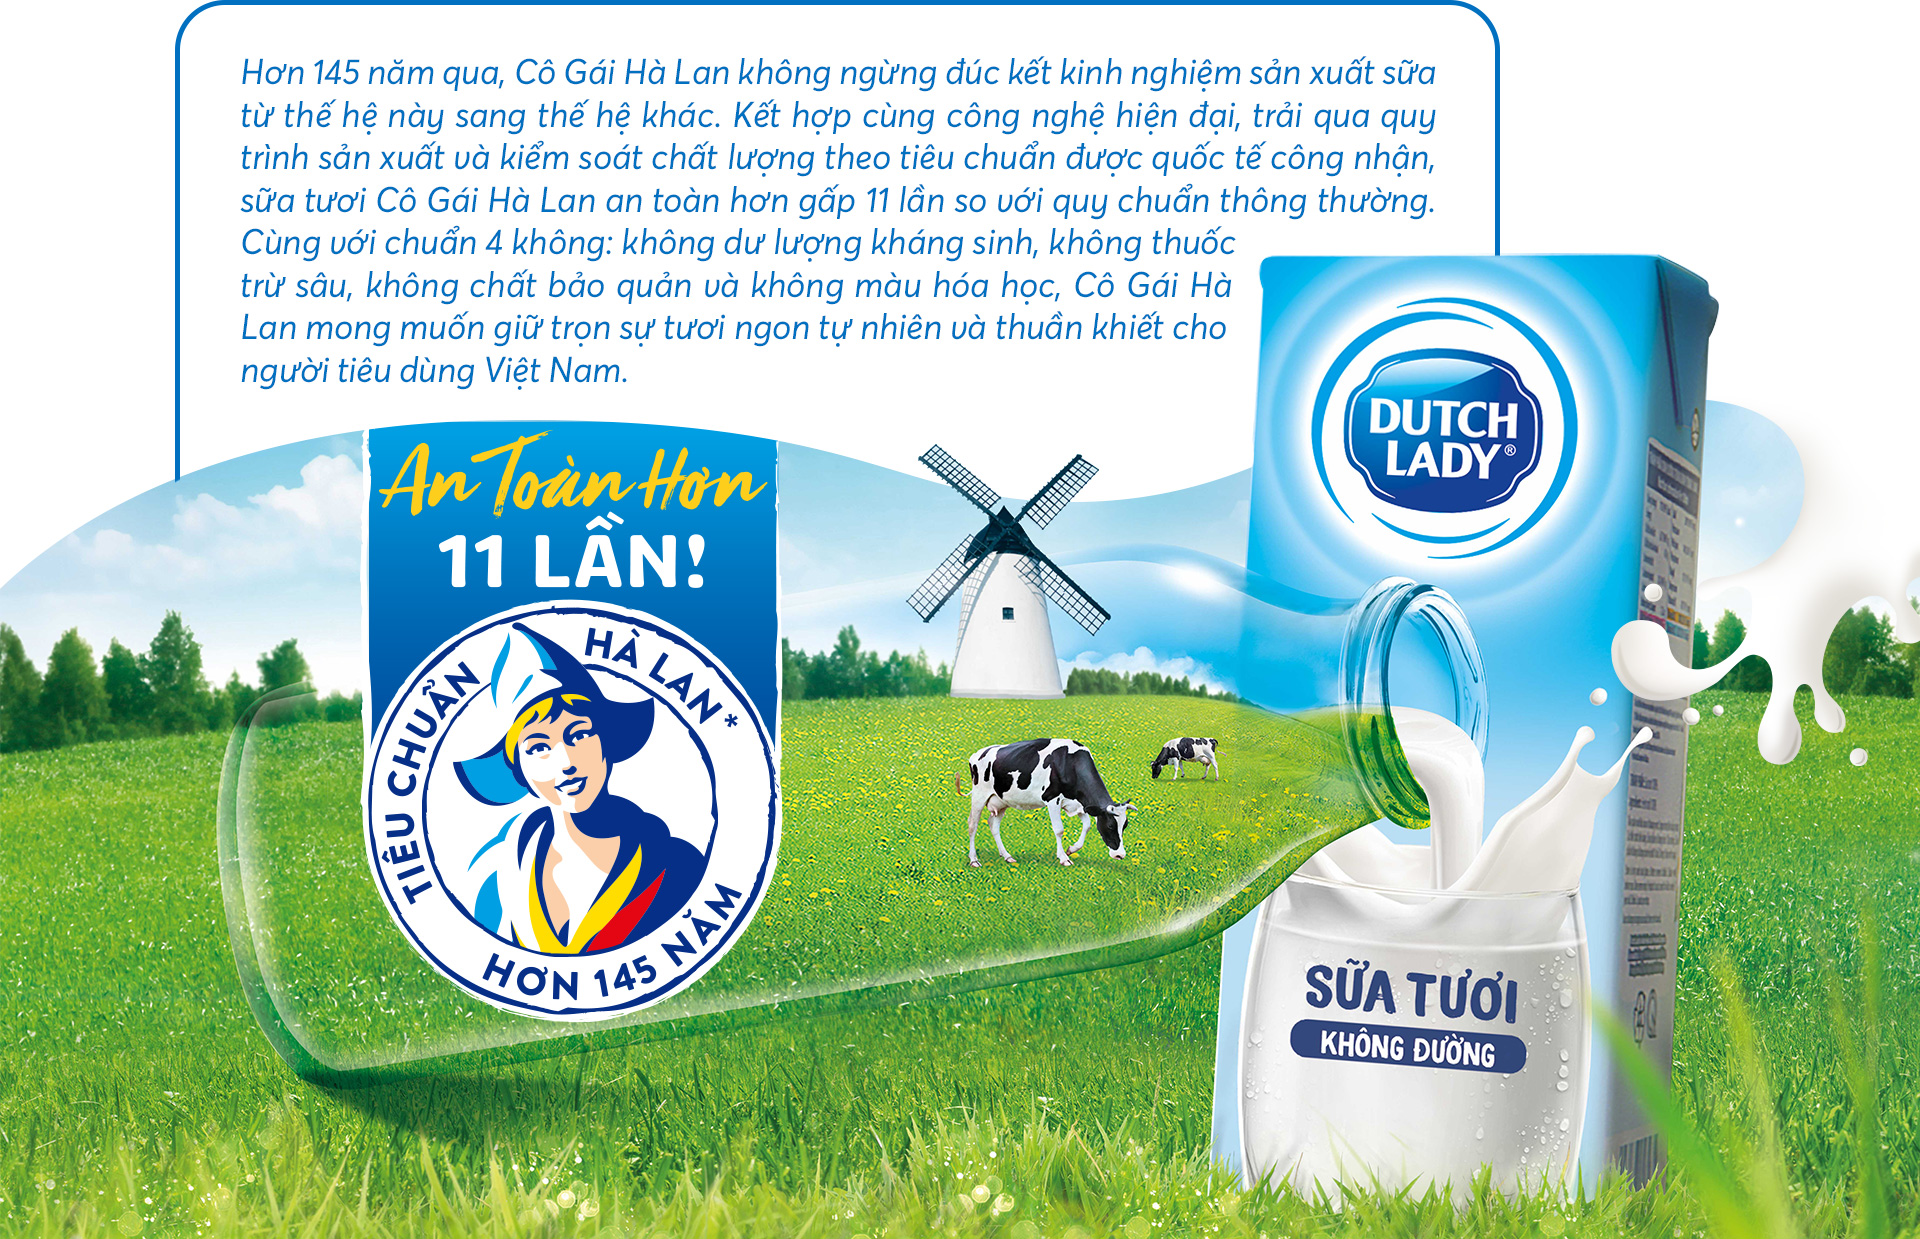 Kiểm soát chất lượng sữa Cô Gái Hà Lan, mẹ bất ngờ trước quy trình đặc biệt - 19